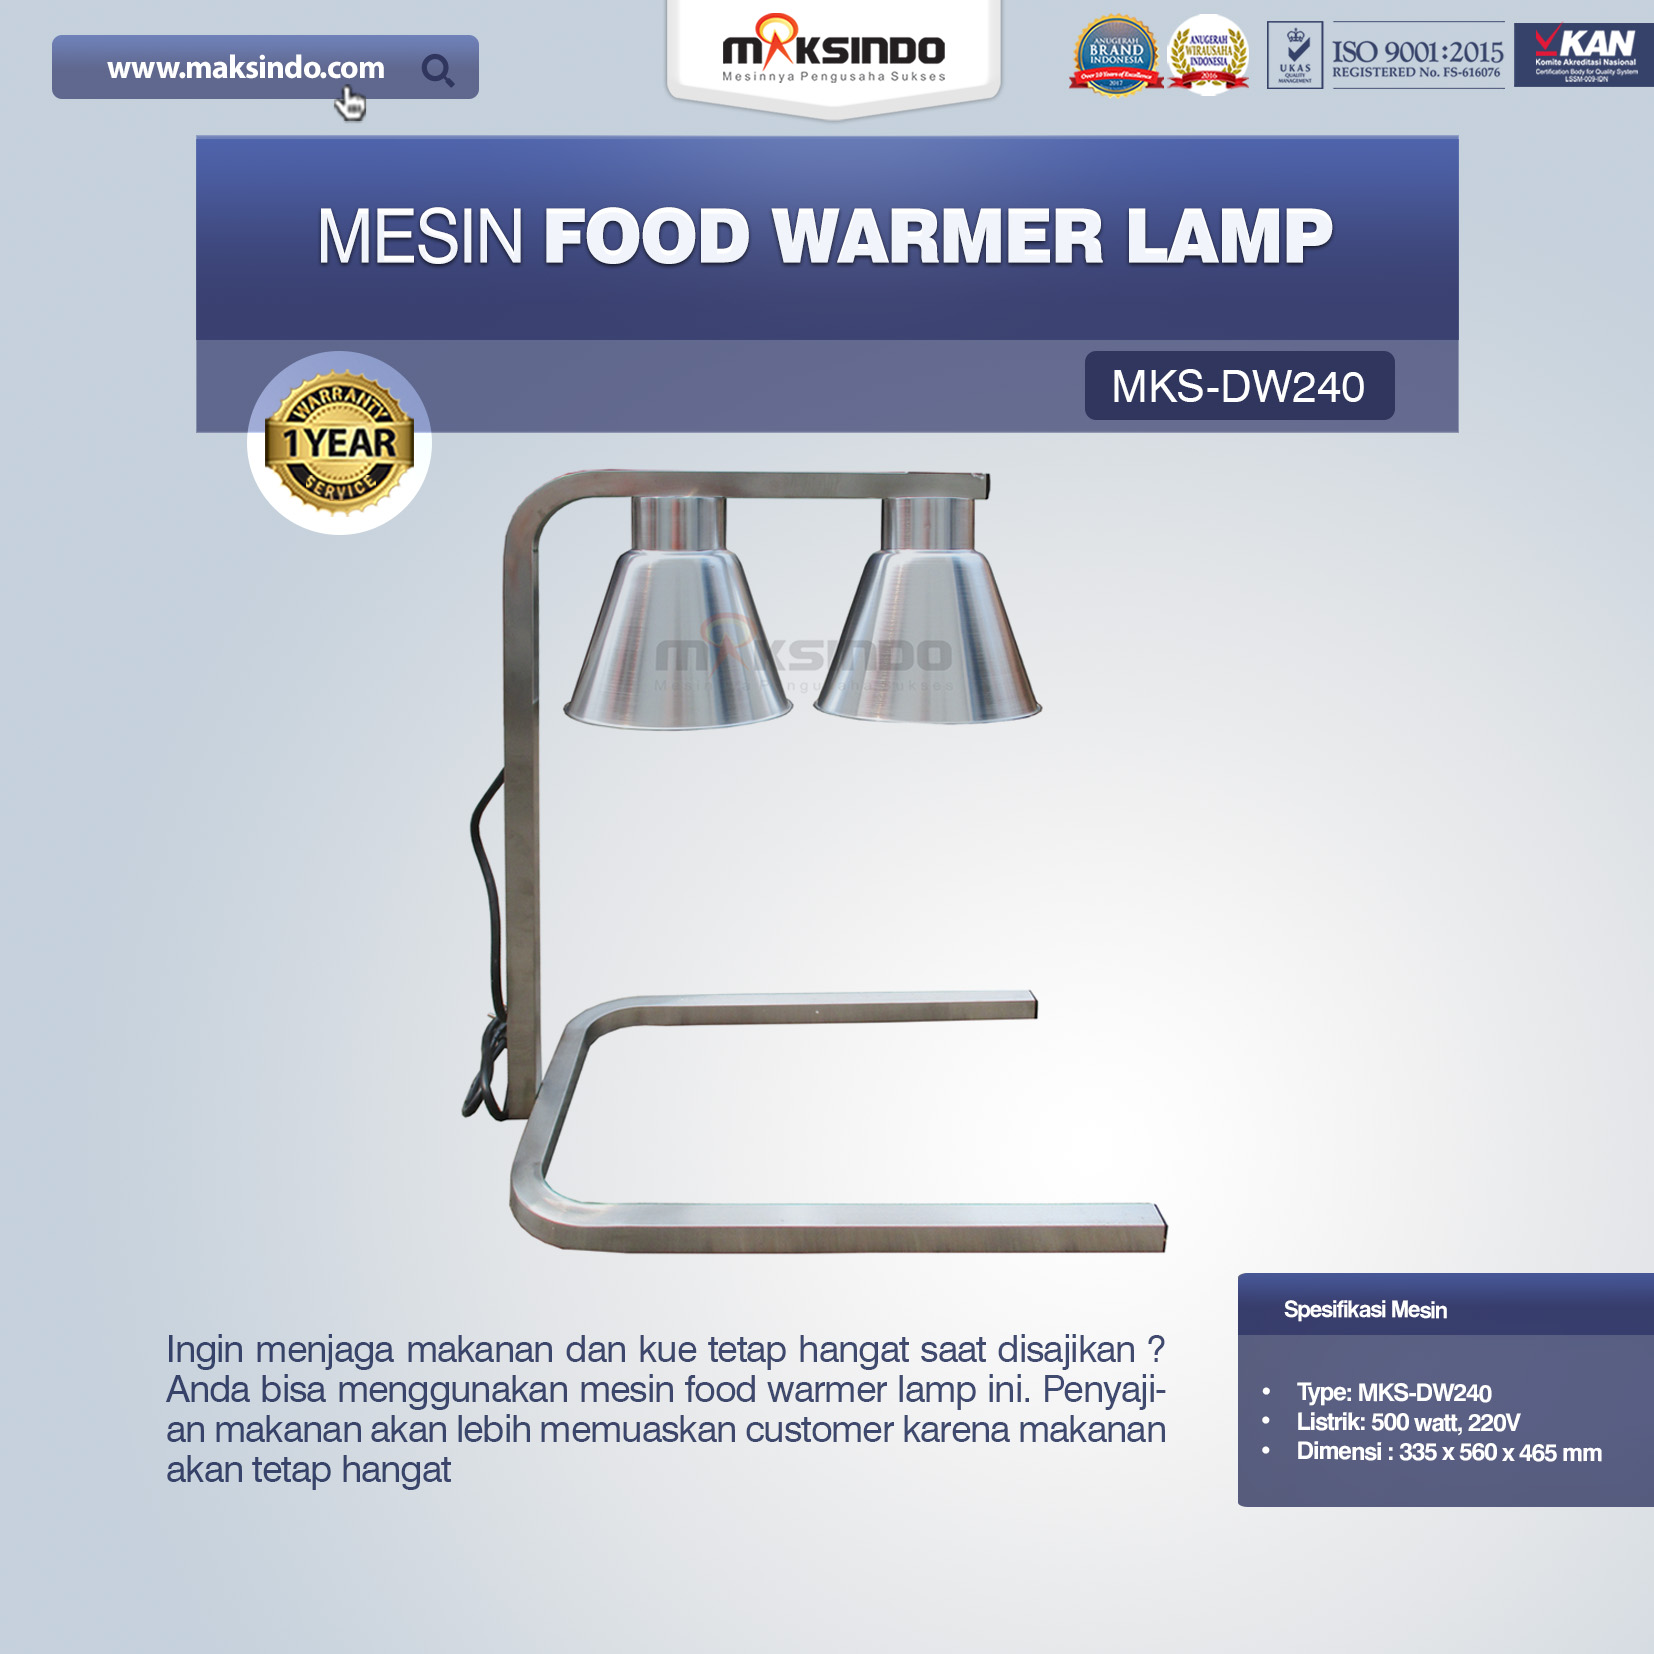 Jual Mesin Food Warmer Lamp MKS-DW240 di Blitar